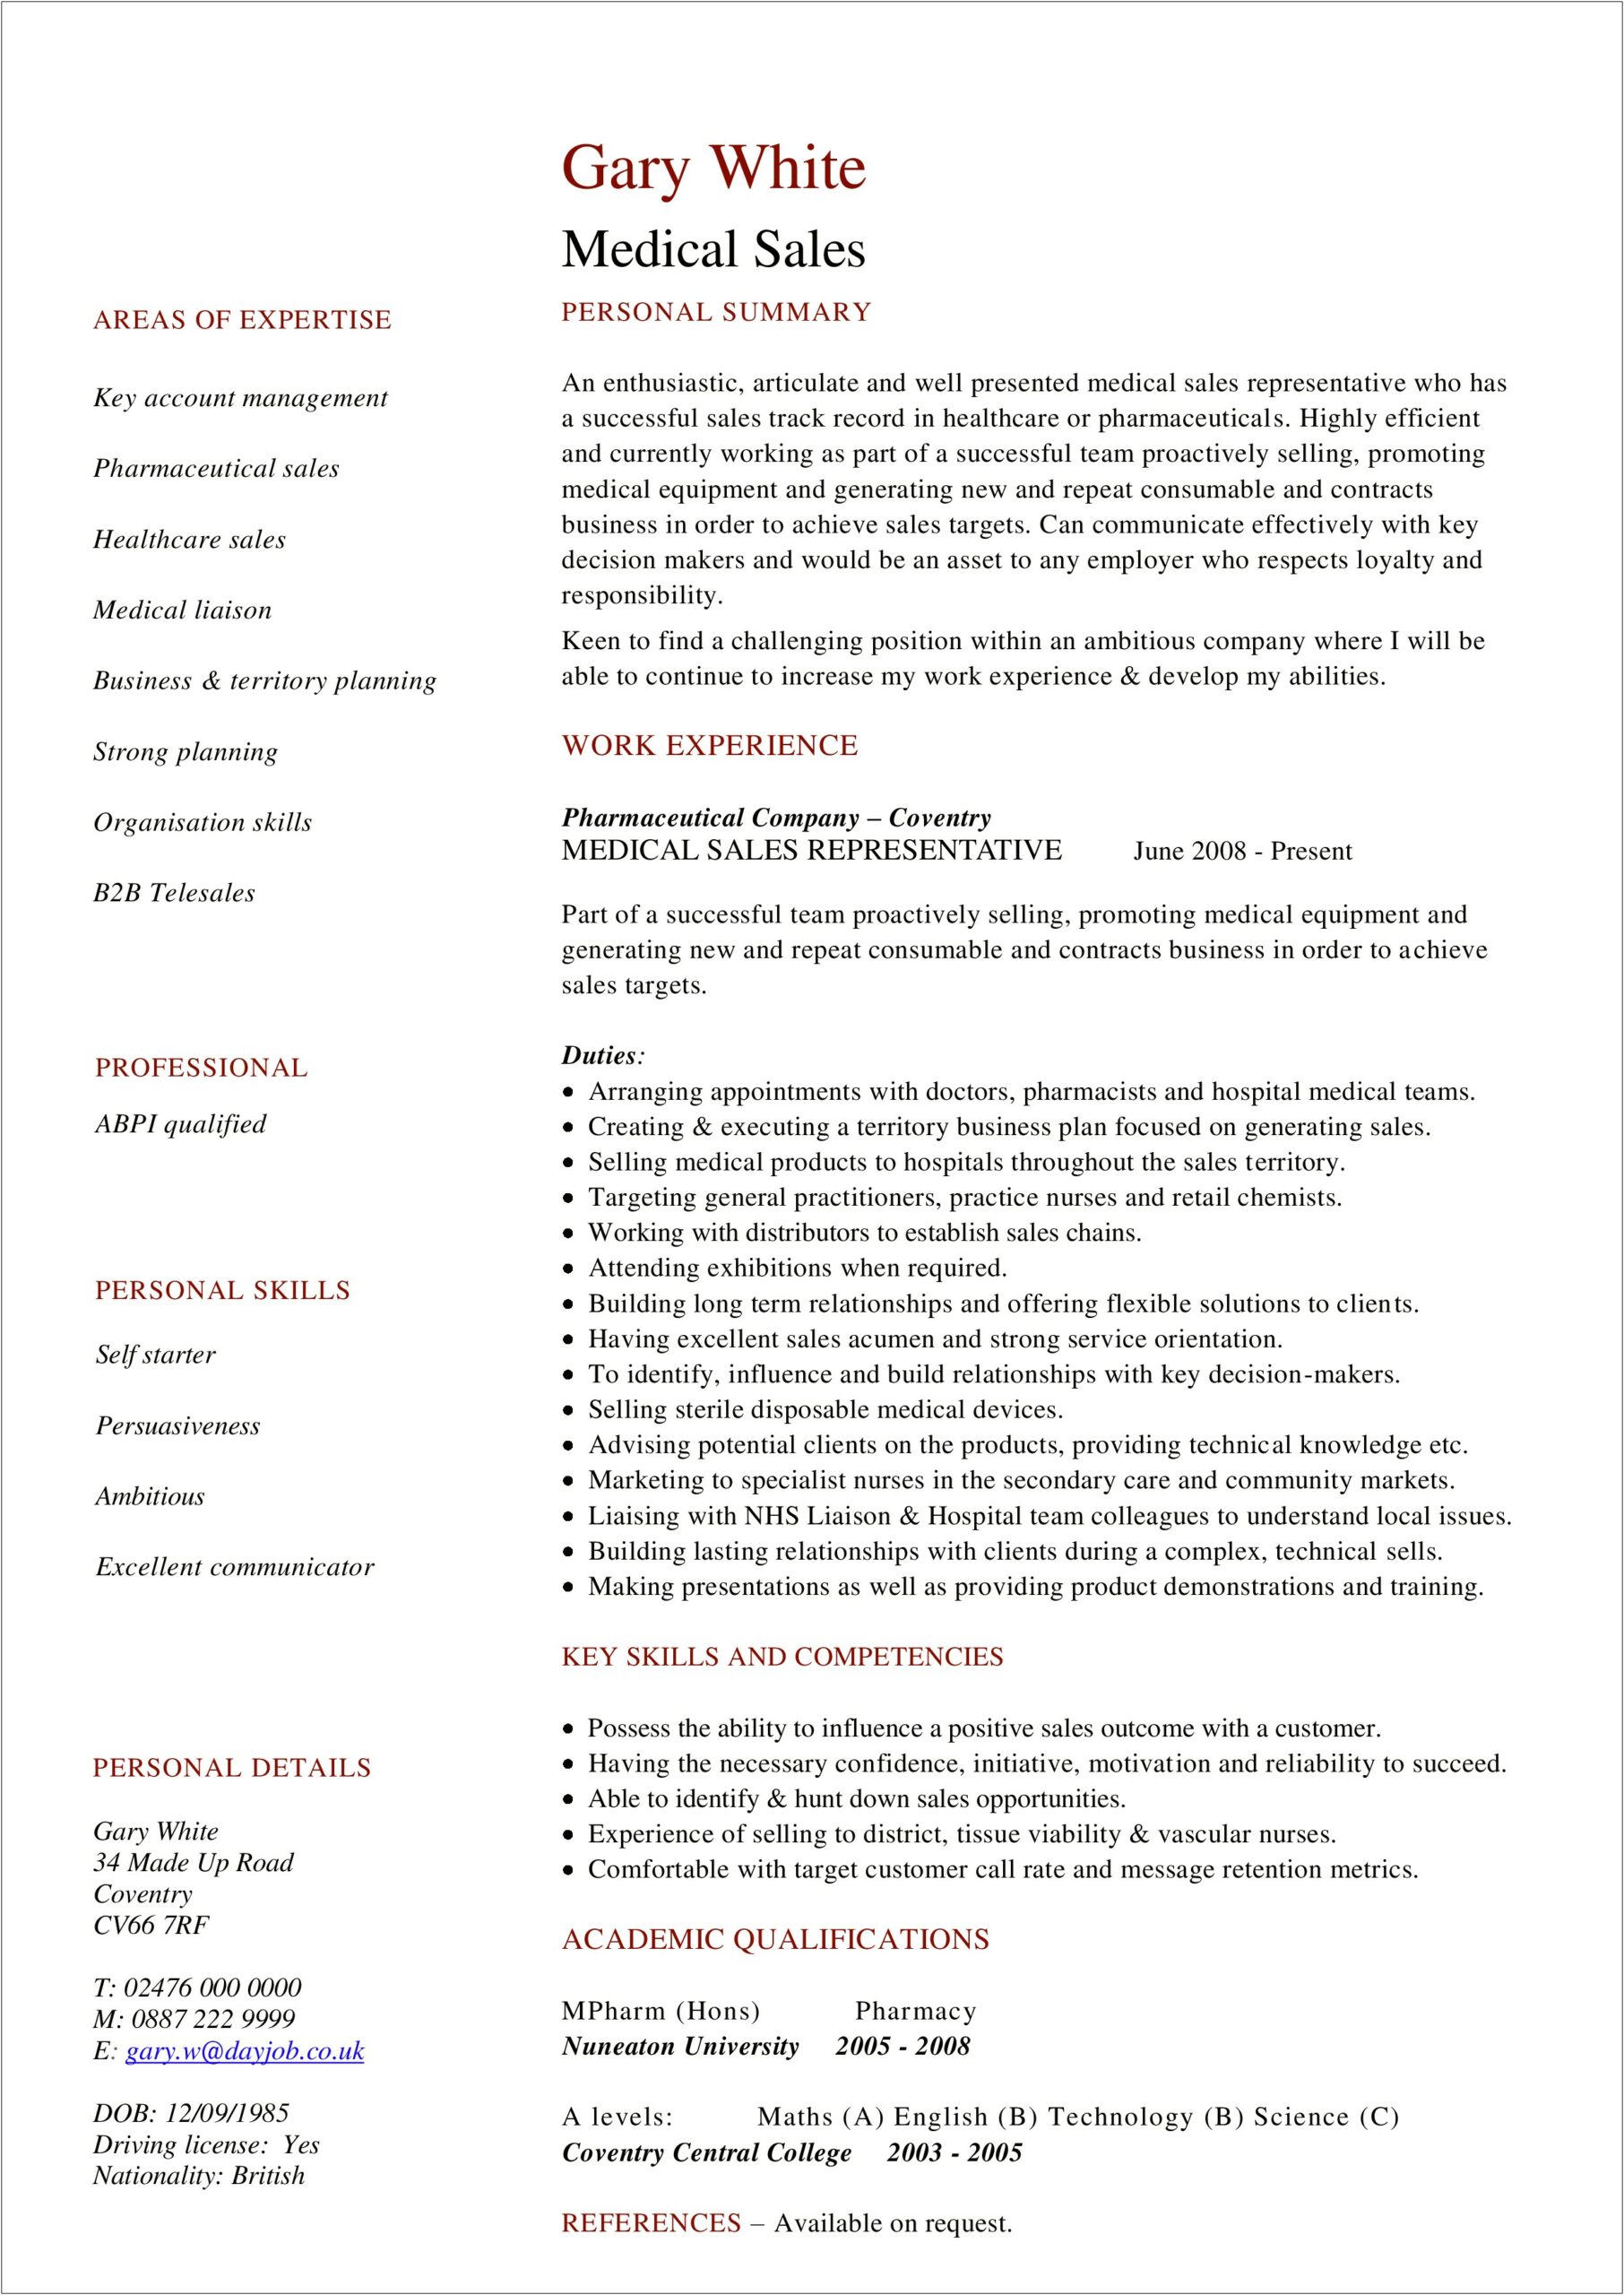 Medical Sales Representative Job Description Resume